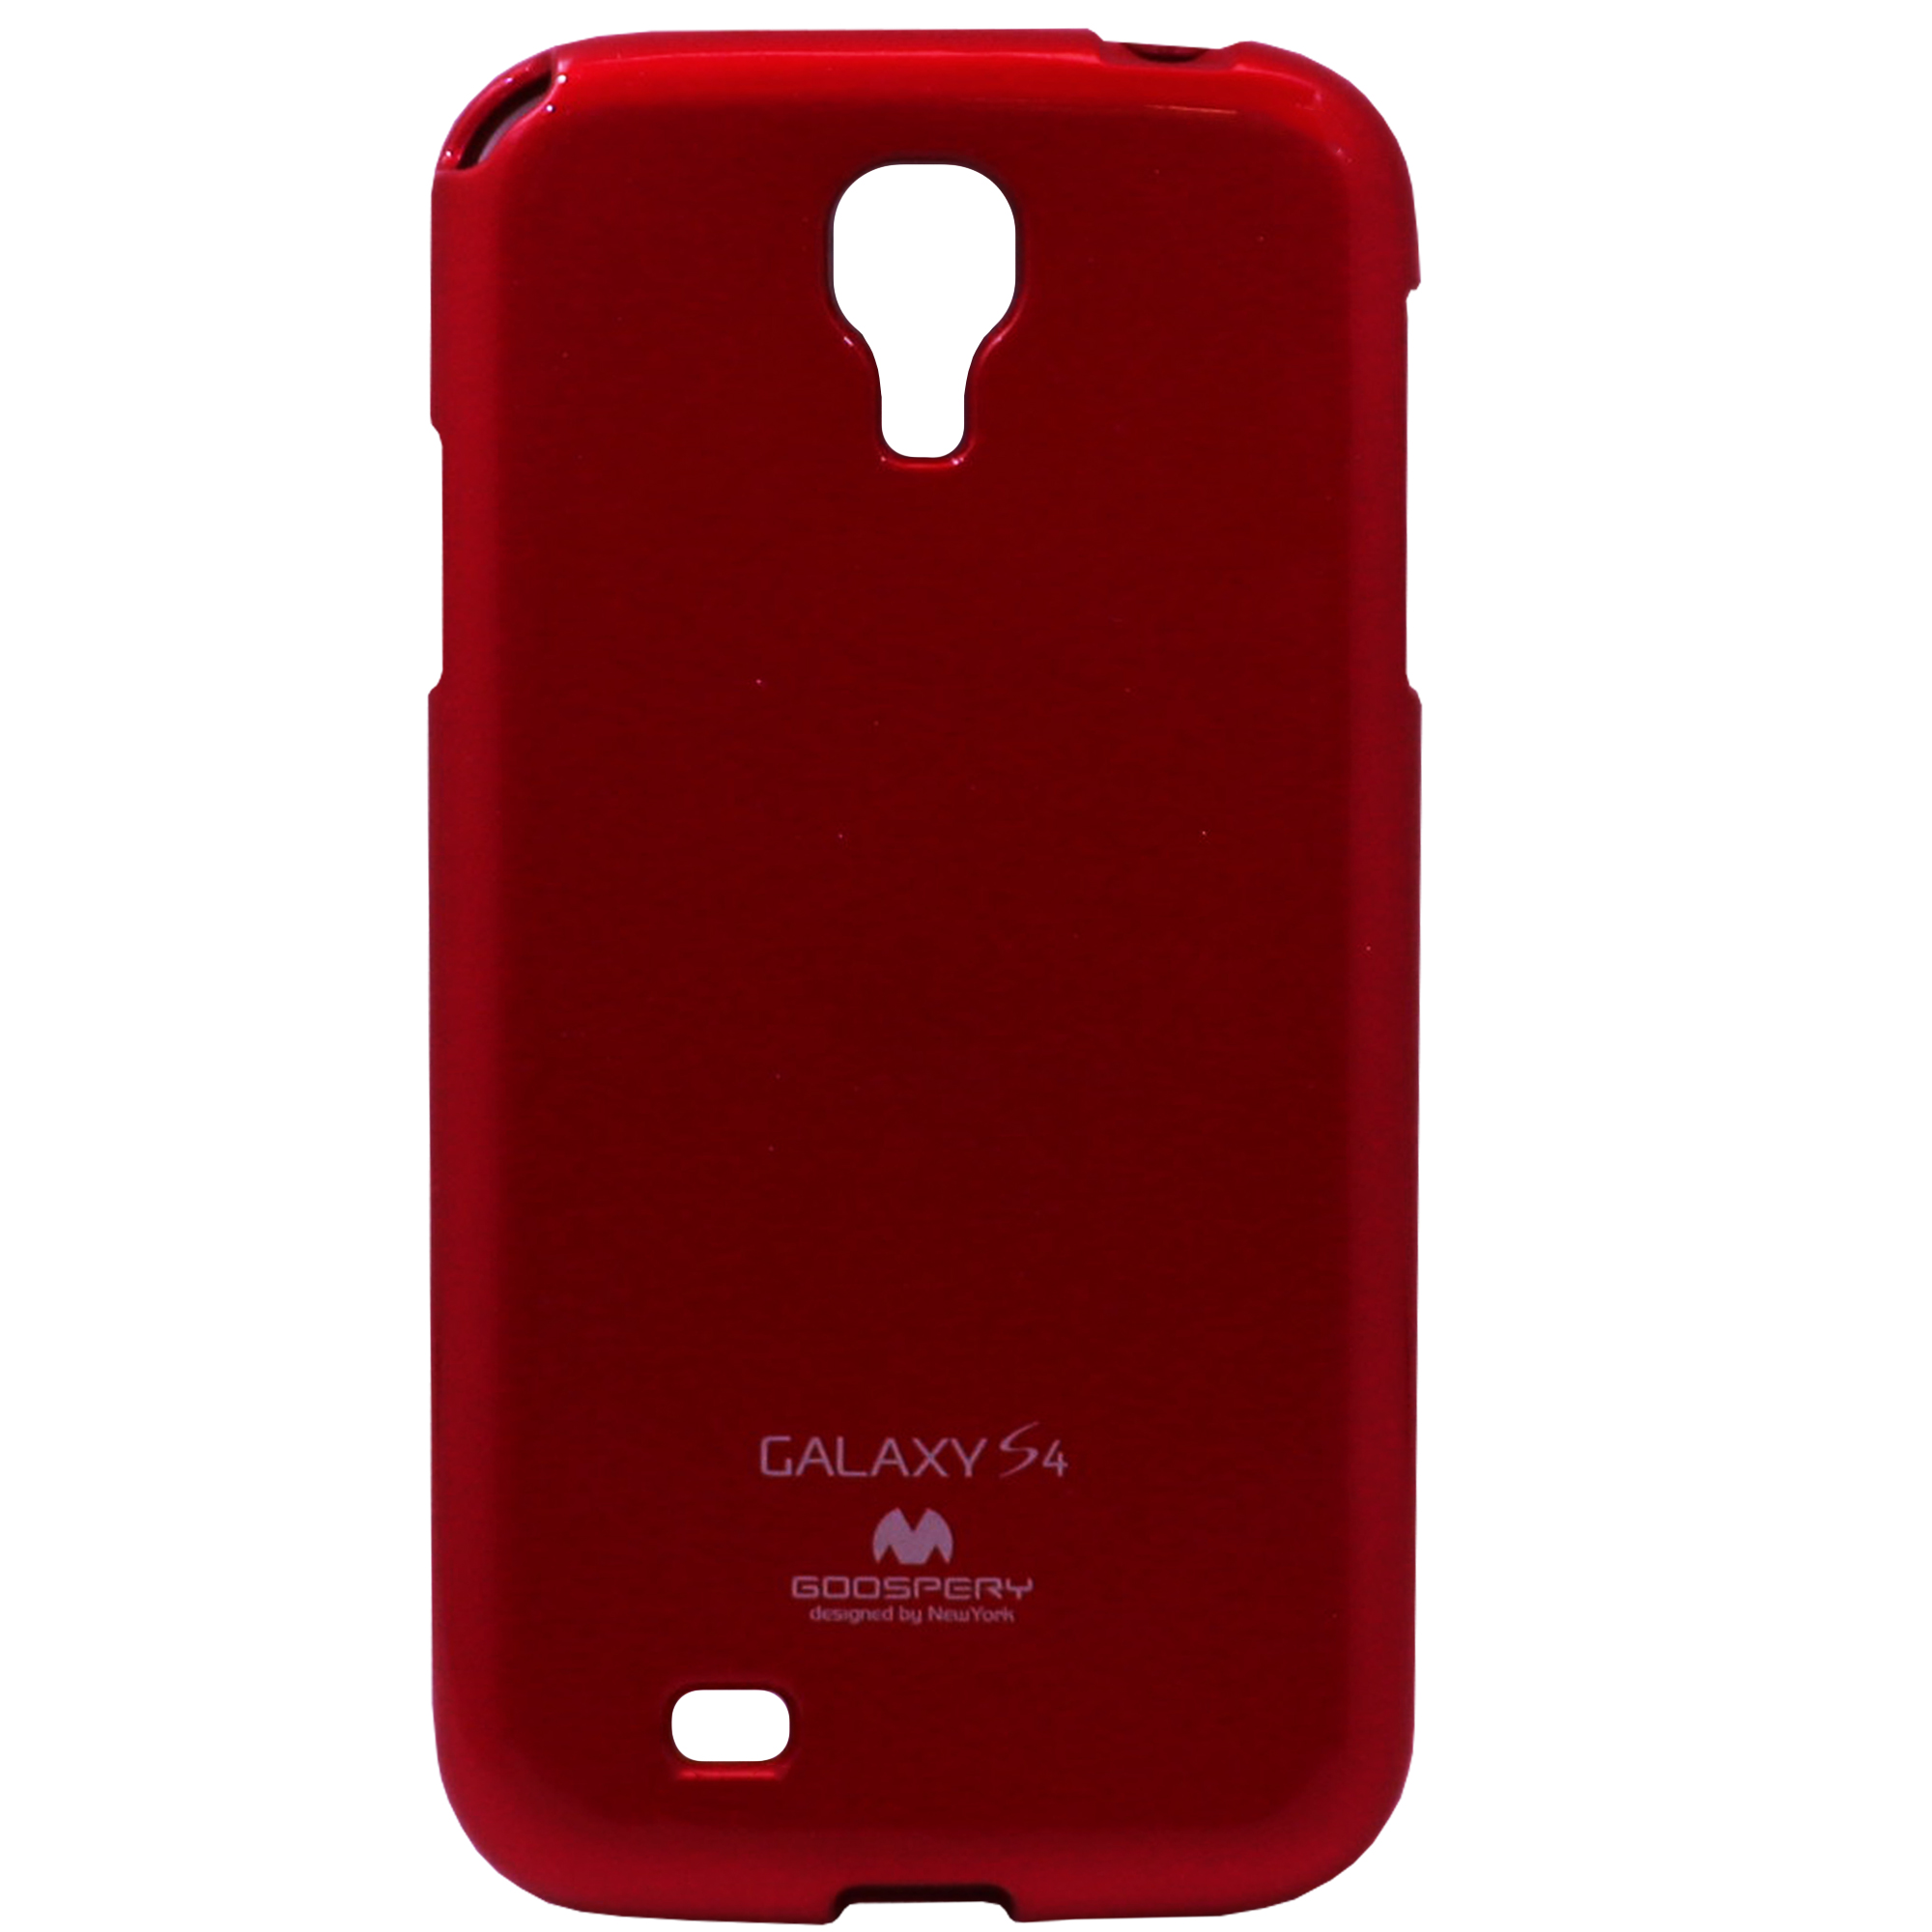 کاور گوسپری مدل gp-1 مناسب برای گوشی موبایل سامسونگ Galaxy S4